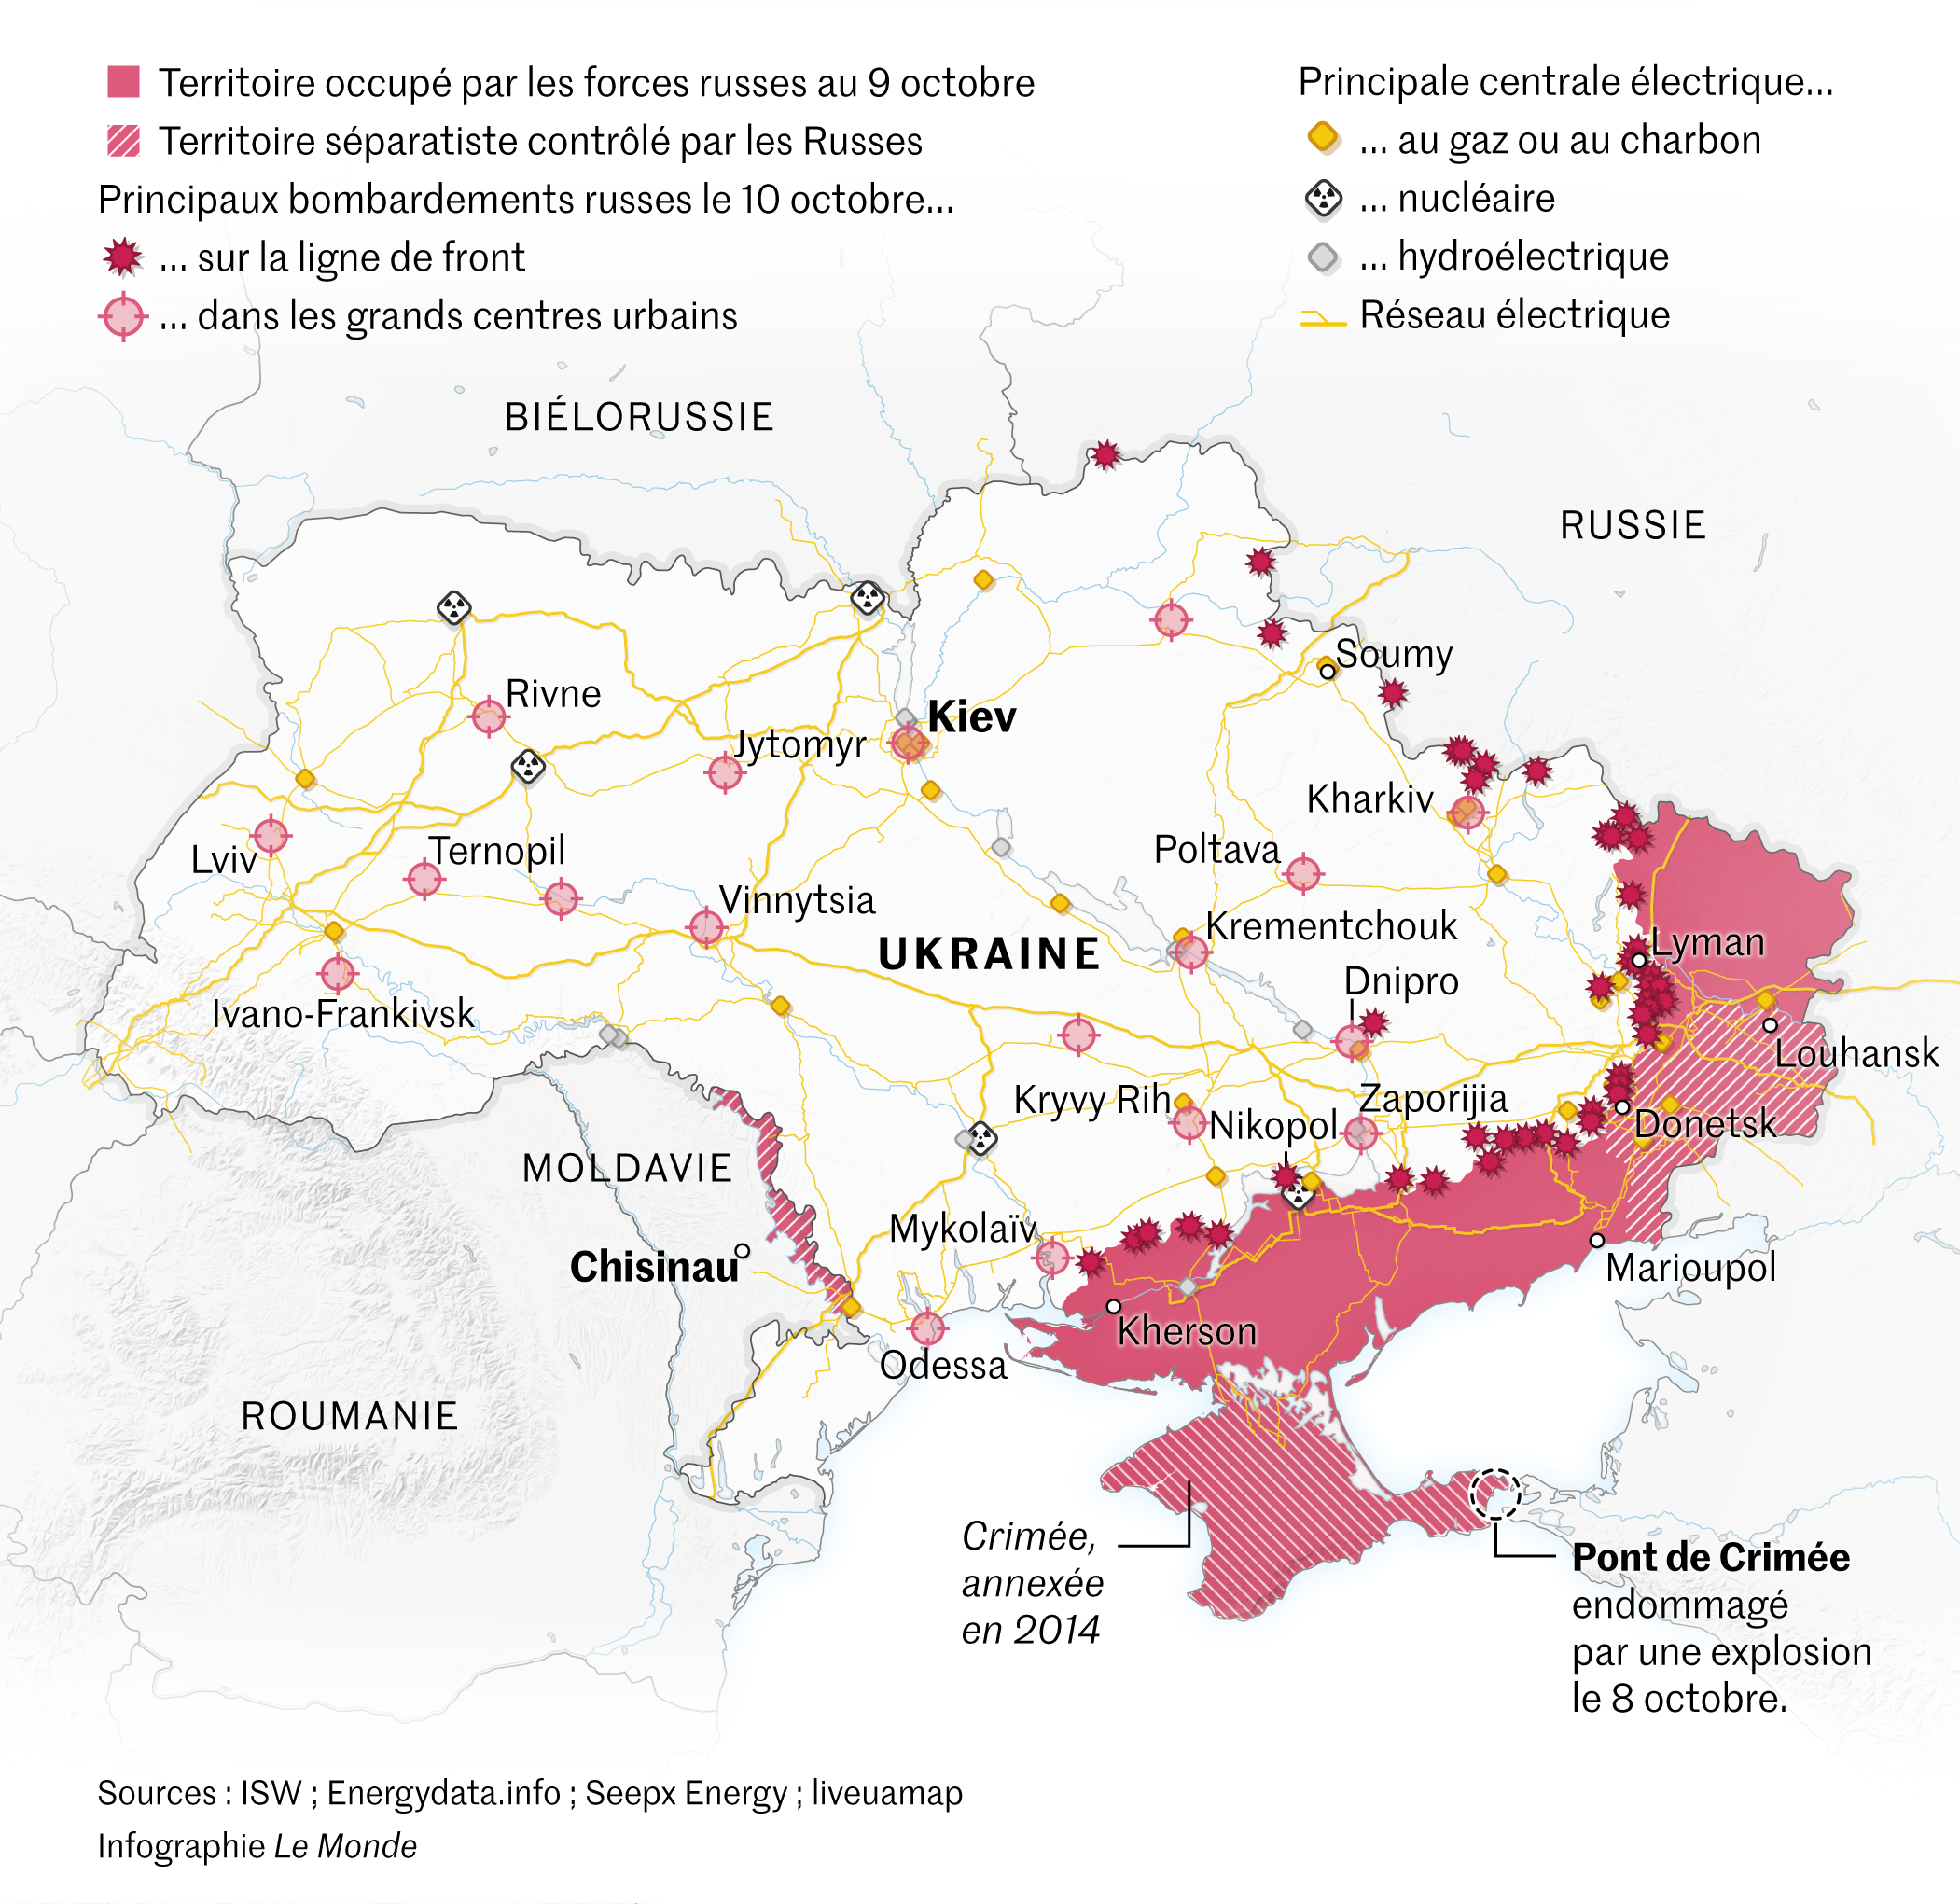 Les cartes de la guerre en Ukraine, depuis l’invasion russe de février